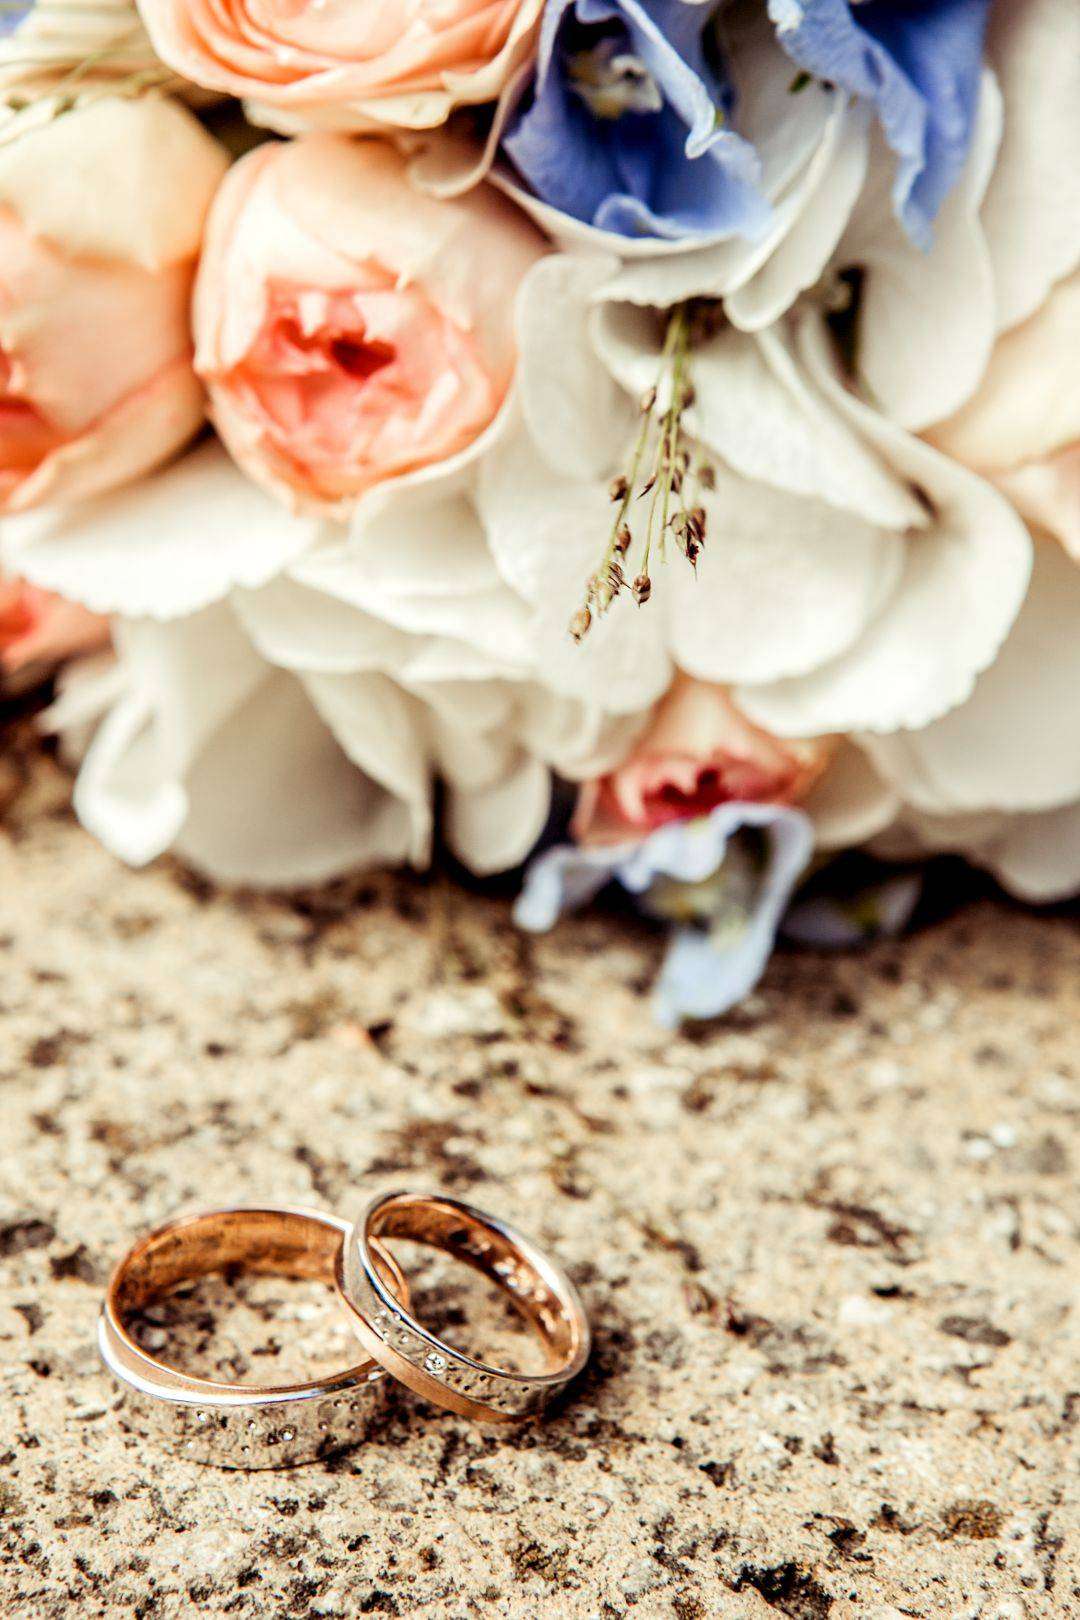 Hochzeit Ringe Blumen